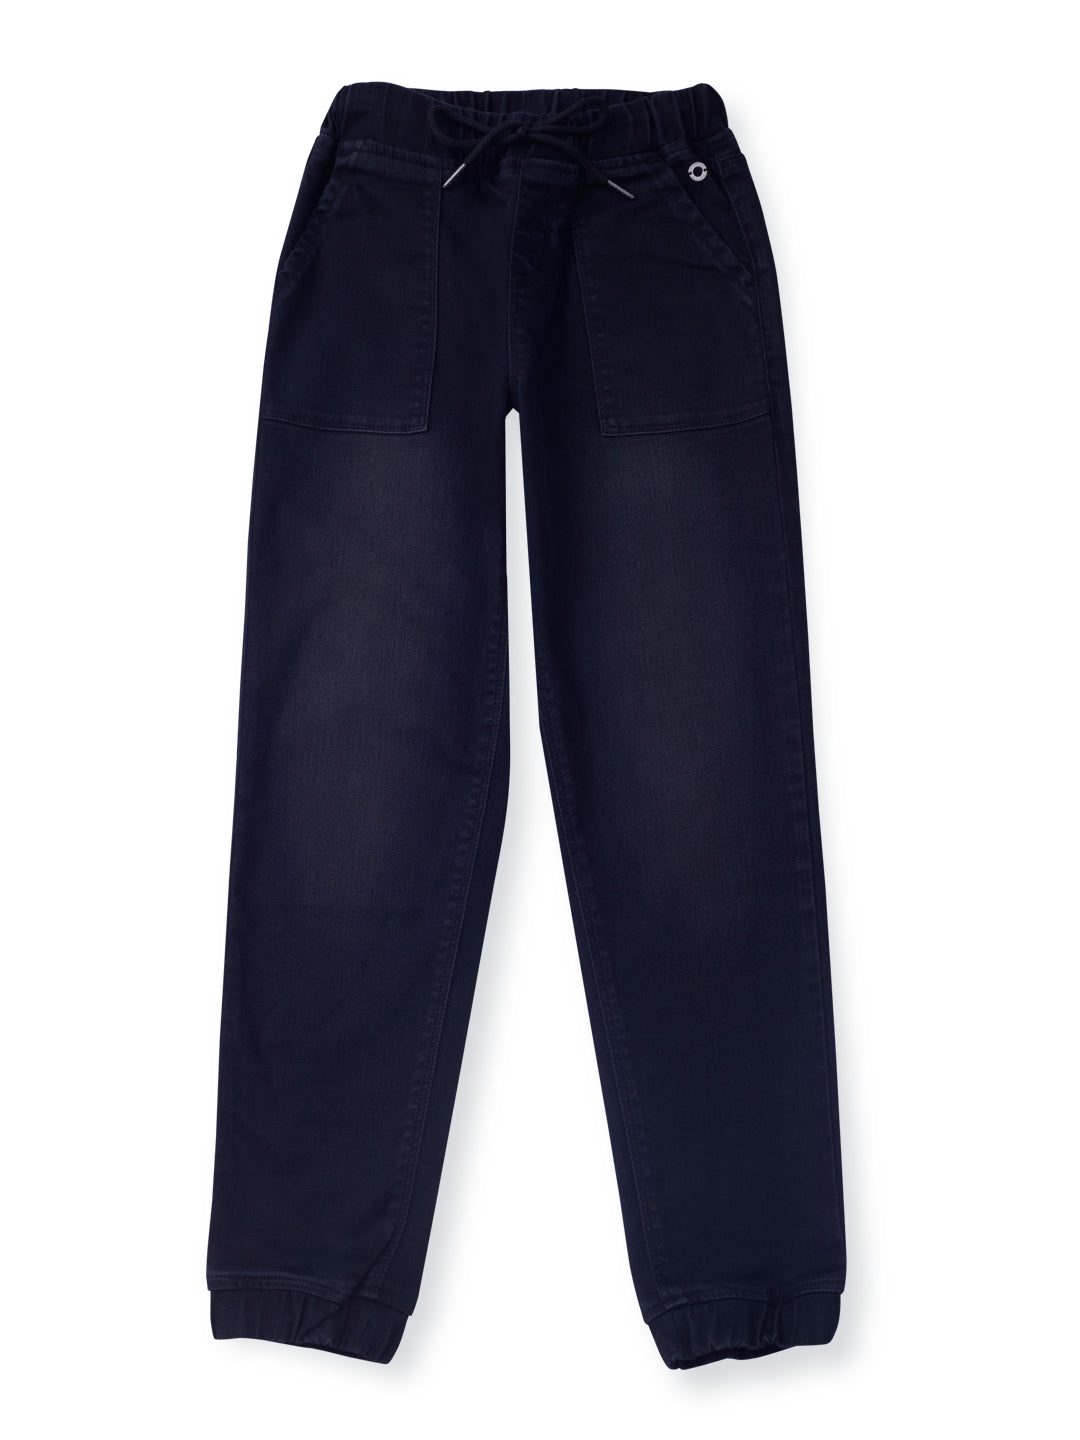 Girls Navy Blue Cotton Denim Solid Jeans